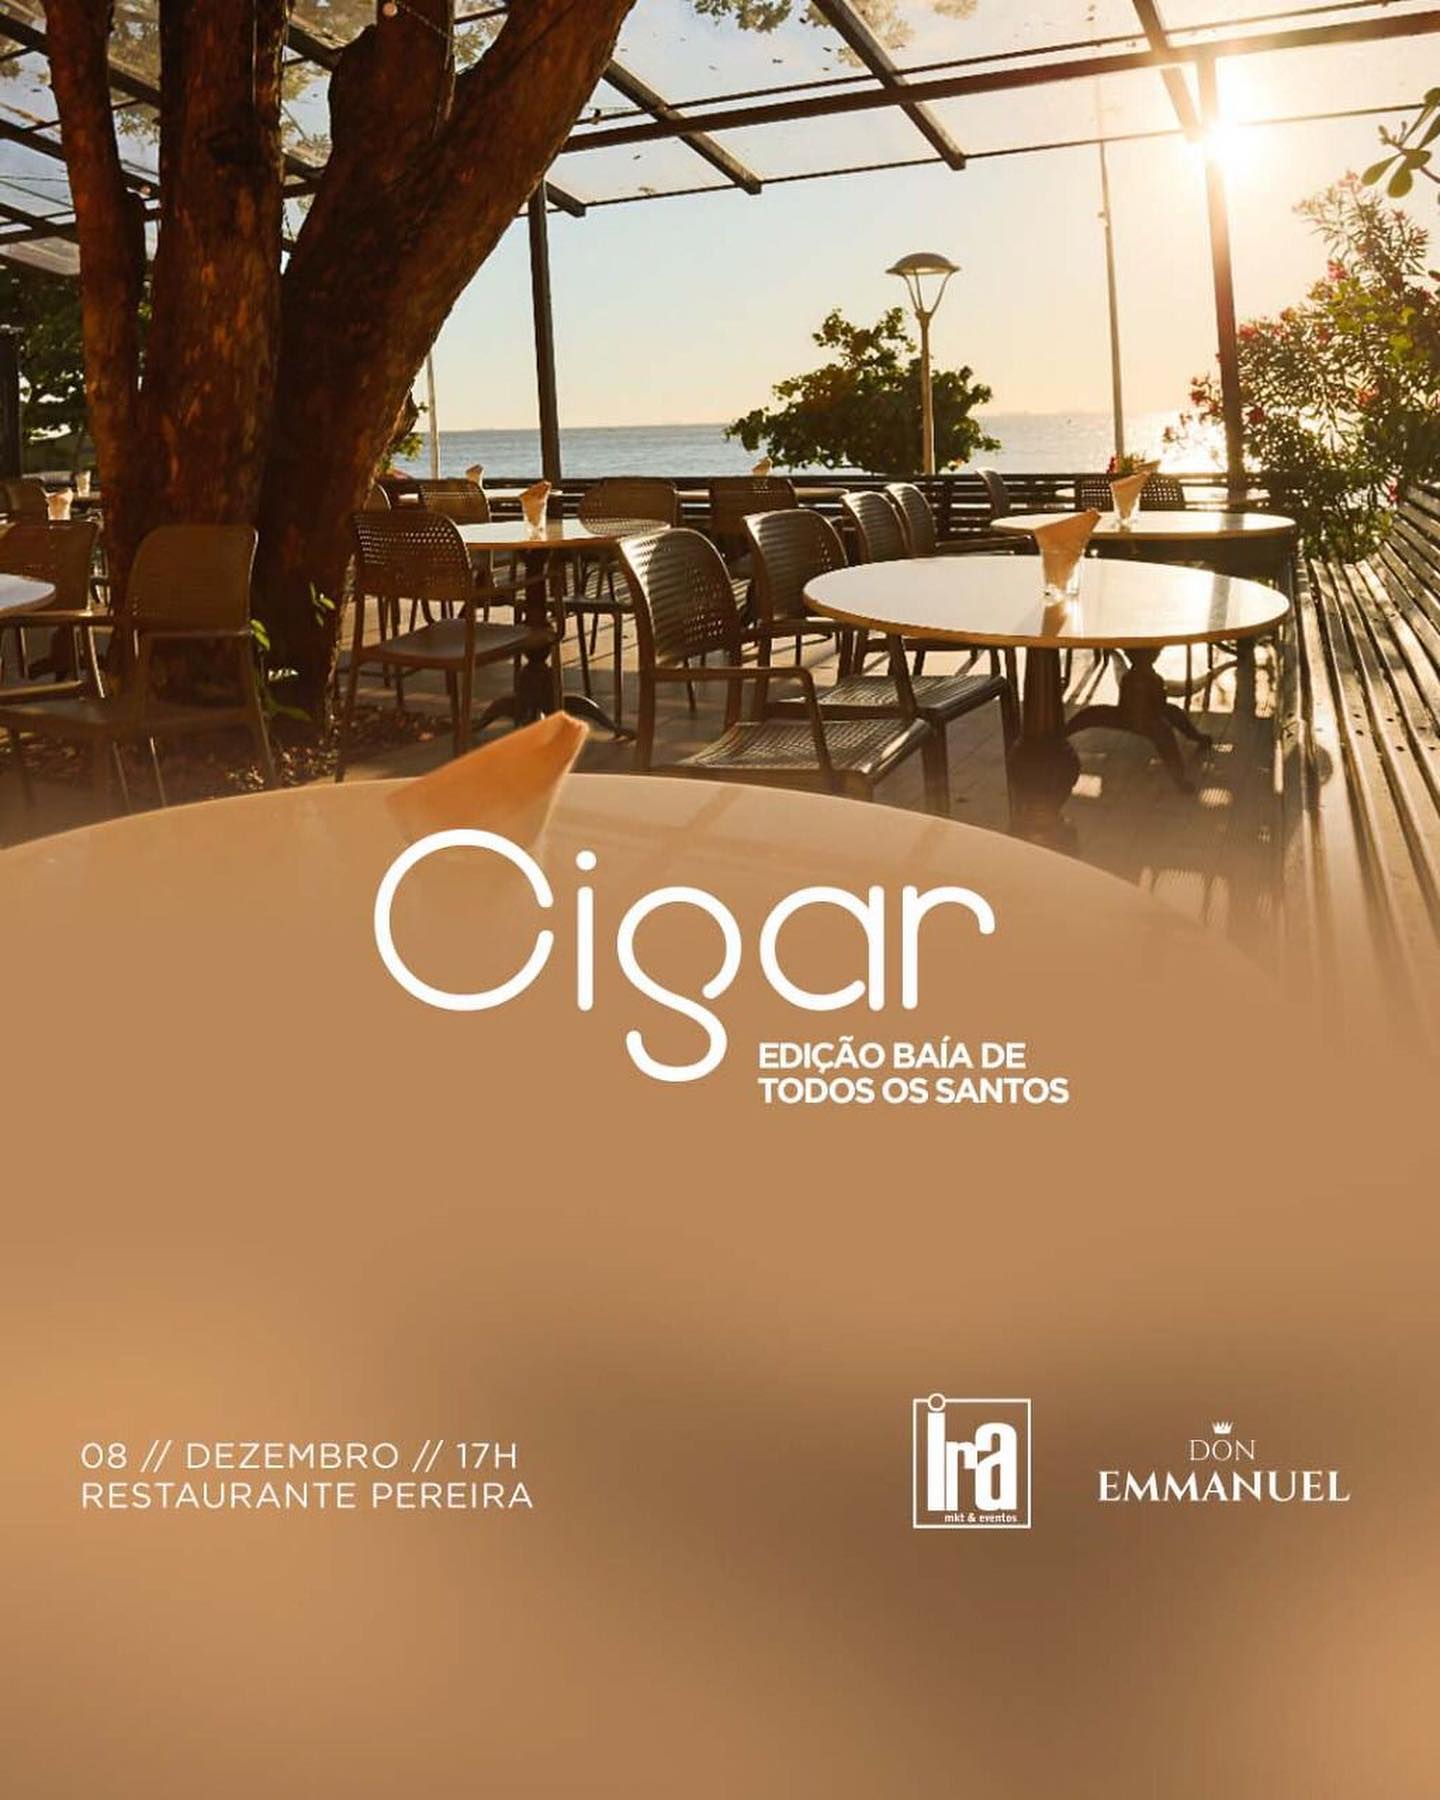 Cigar Edição Baía de Todos os Santos : dia 08/12 no Restaurante Pereira, em Salvador – compre seu ingresso!